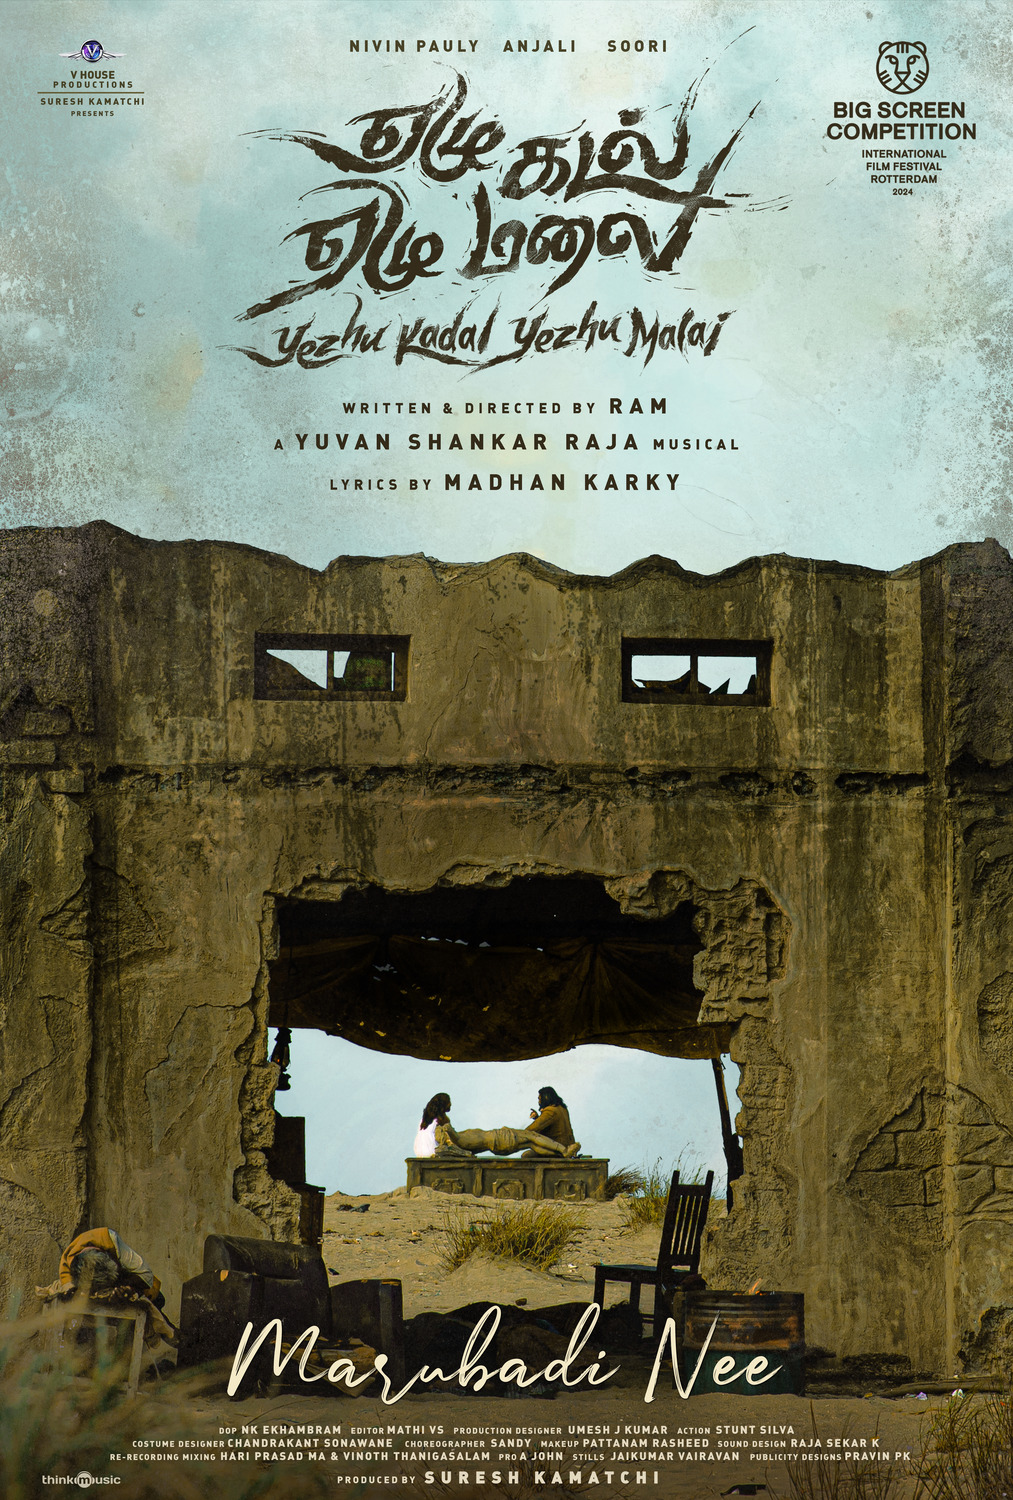 Extra Large Movie Poster Image for Yezhu Kadal Yezhu Malai (#12 of 15)